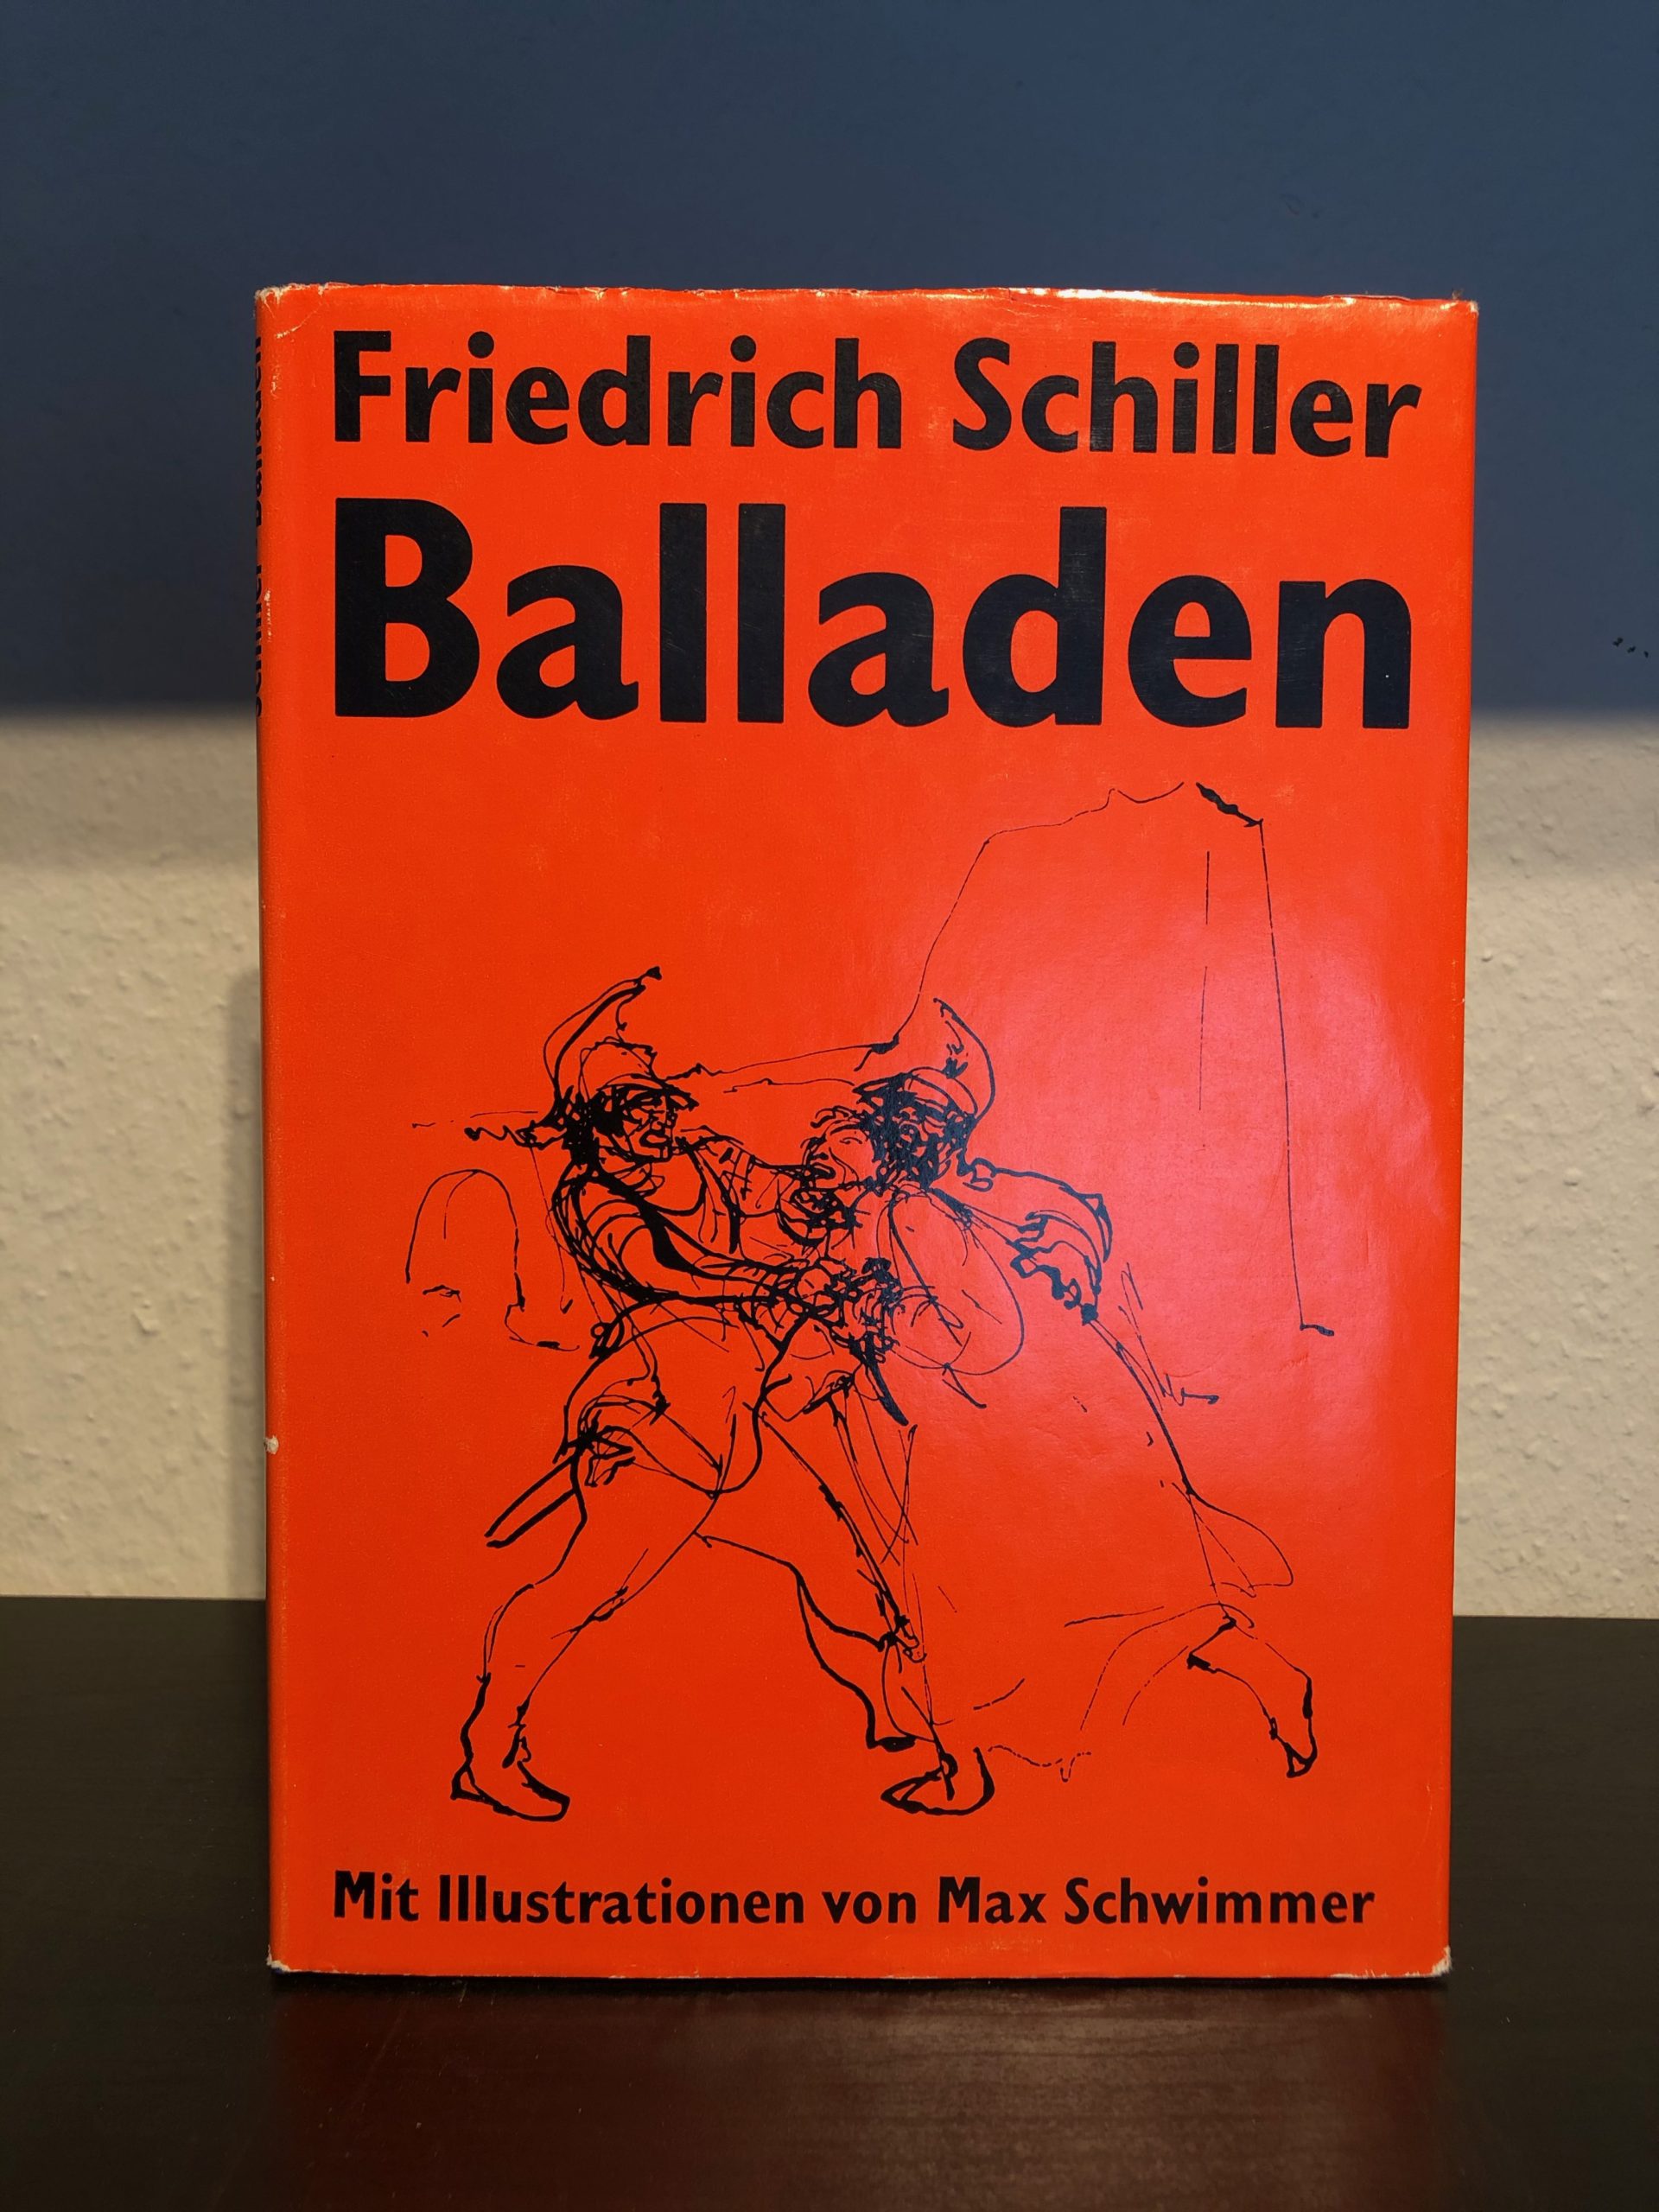 Balladen - Friedrich Schiller-image